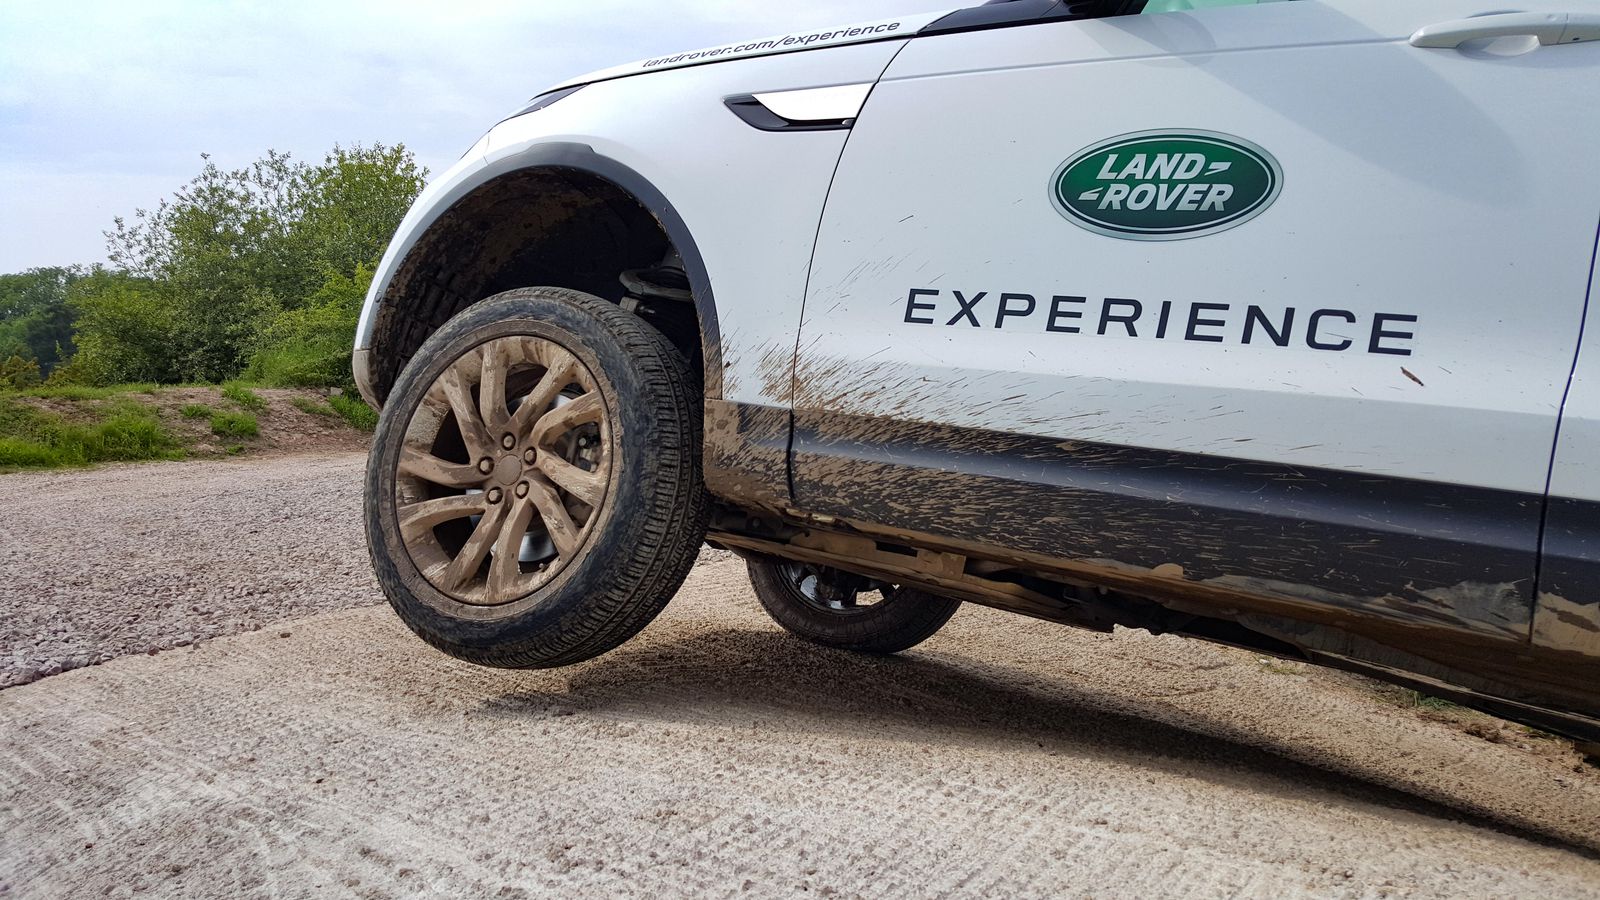 Garmin Land Rover Experience